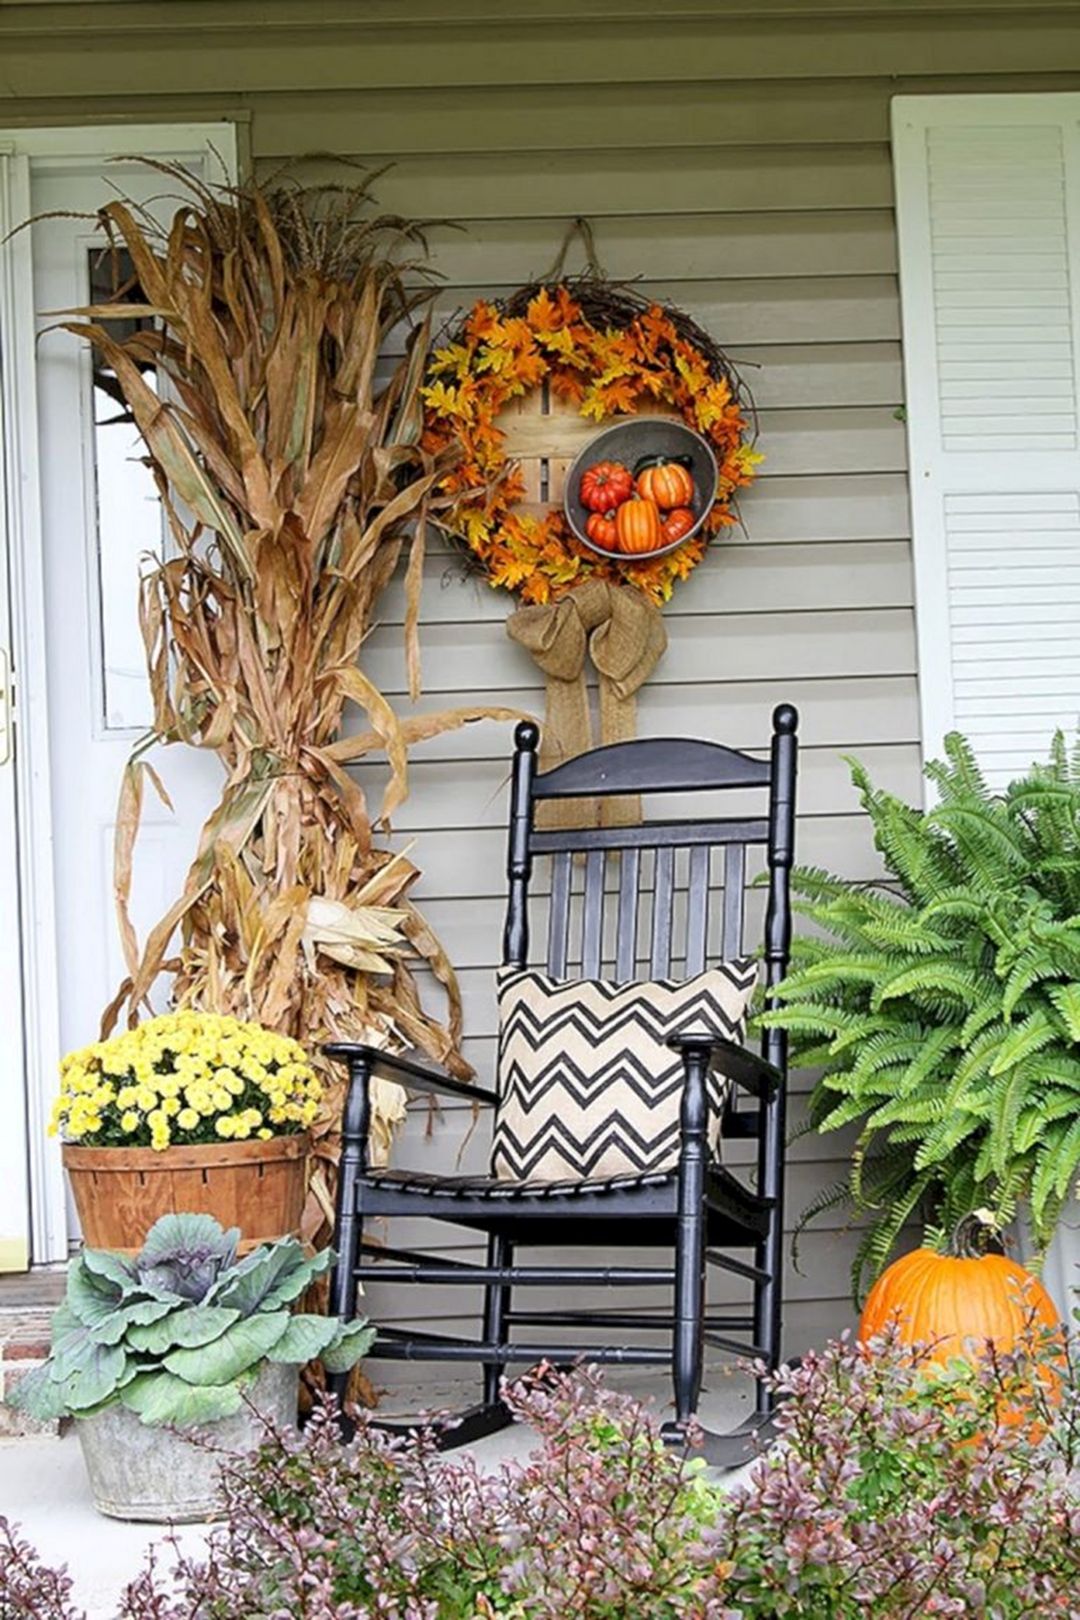 Autumn porch décor ideas -